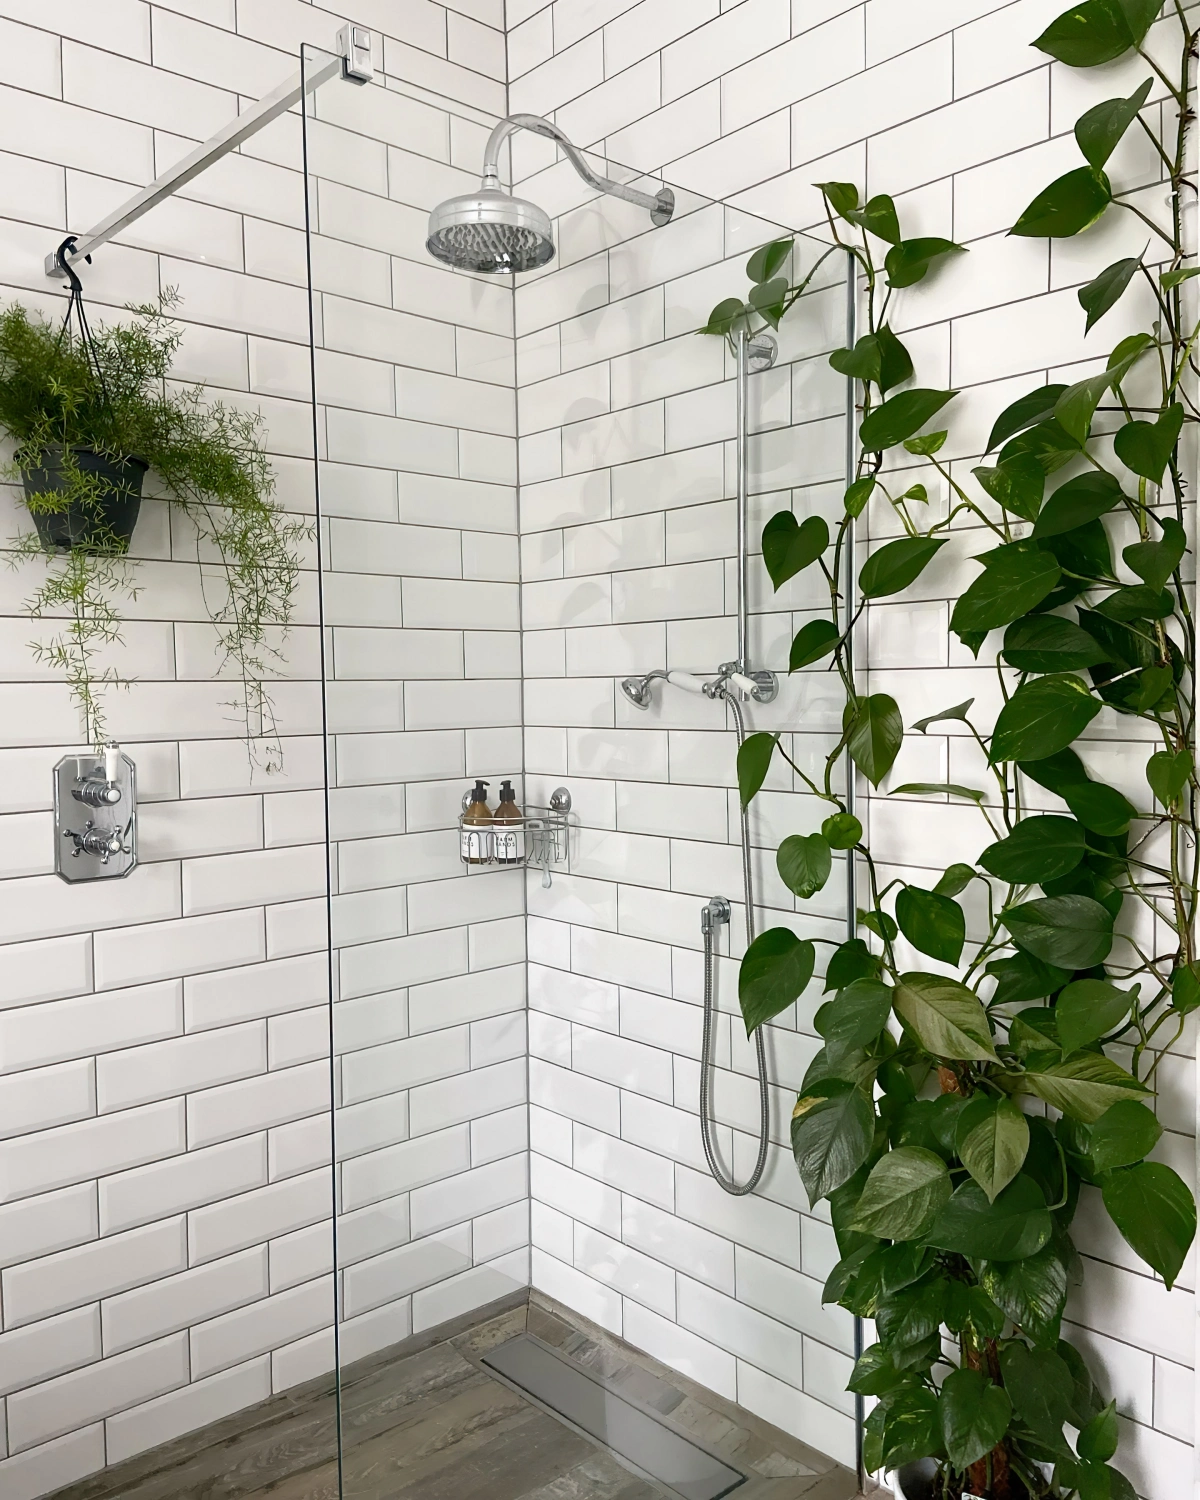 deco salle de bain blanche carrelage douche paroi plante pothos